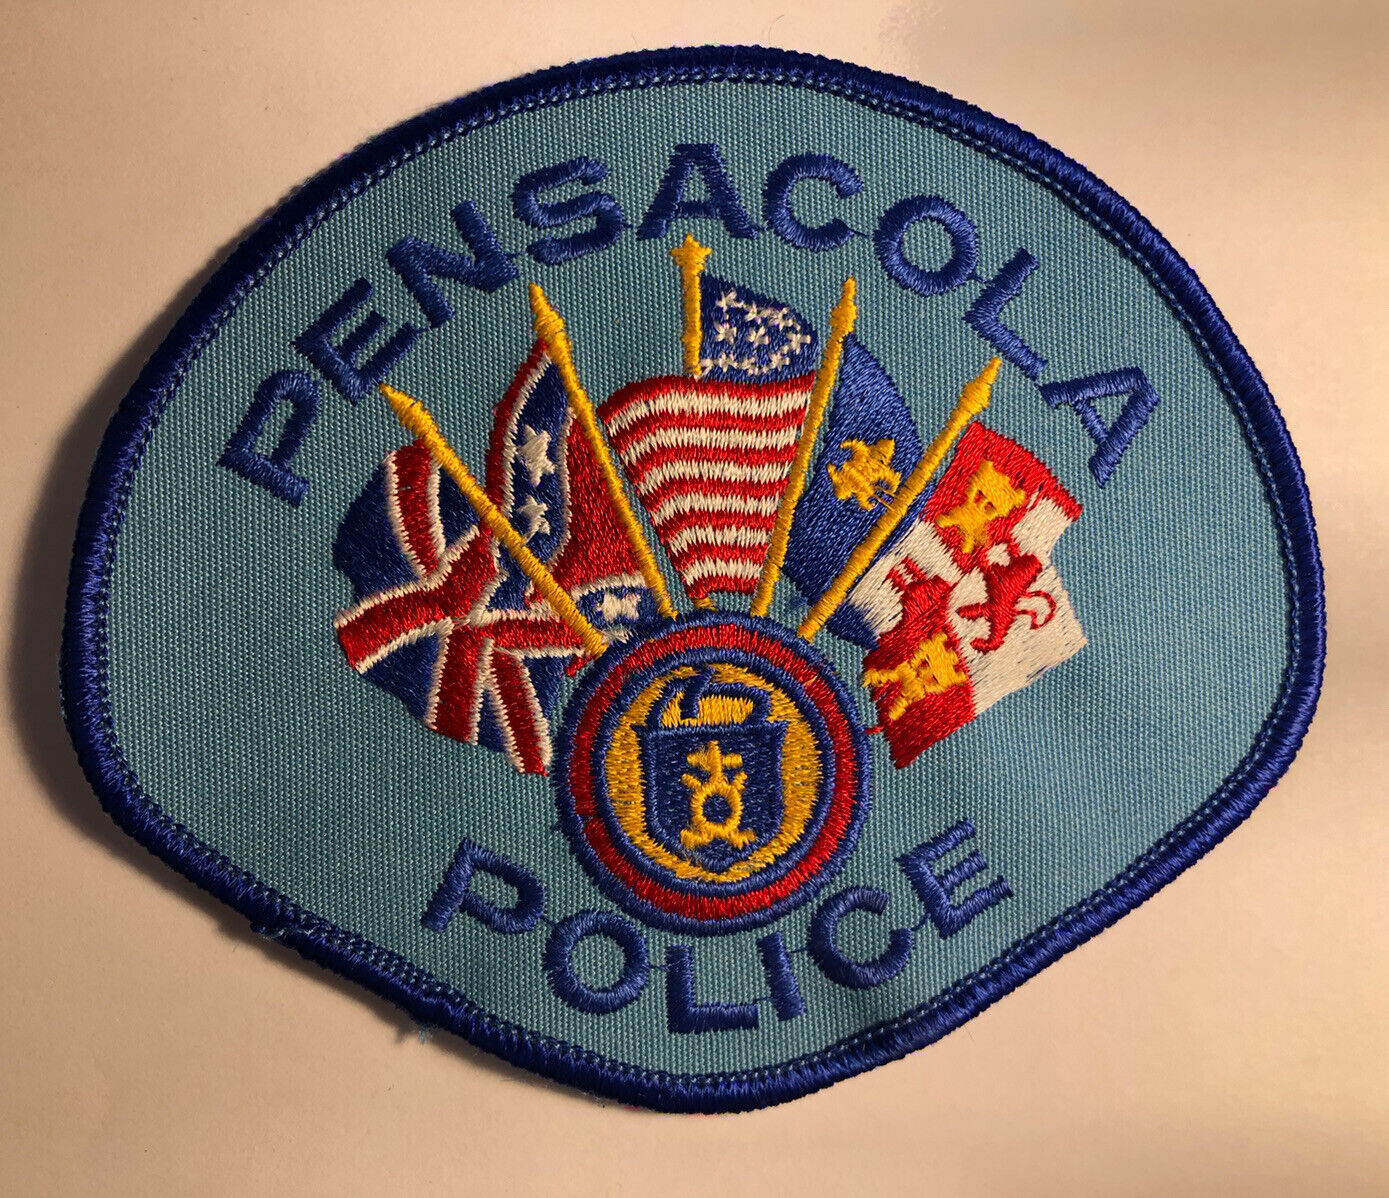 Pensacola Florida Police Patch